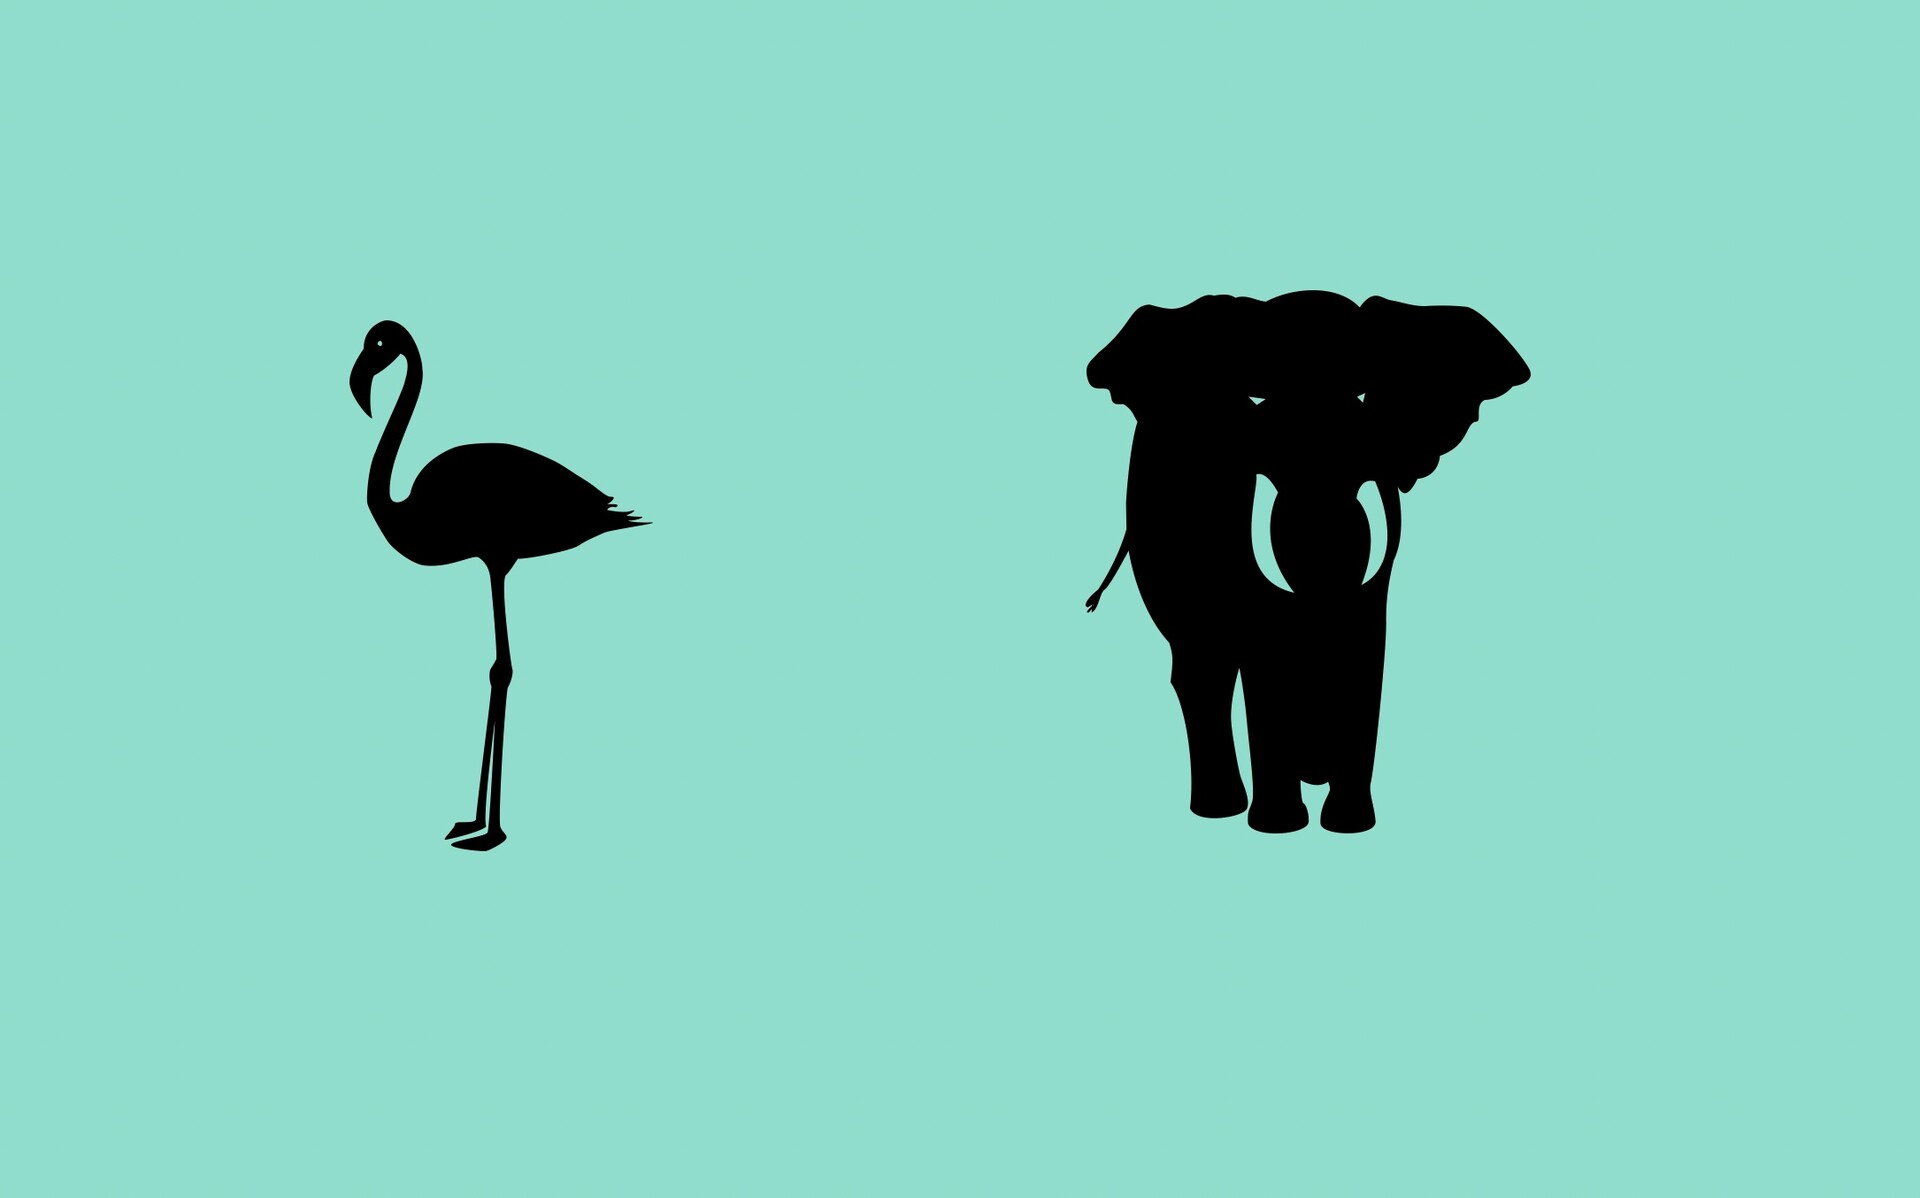 大象、企鹅等有趣的动物剪影PS形状